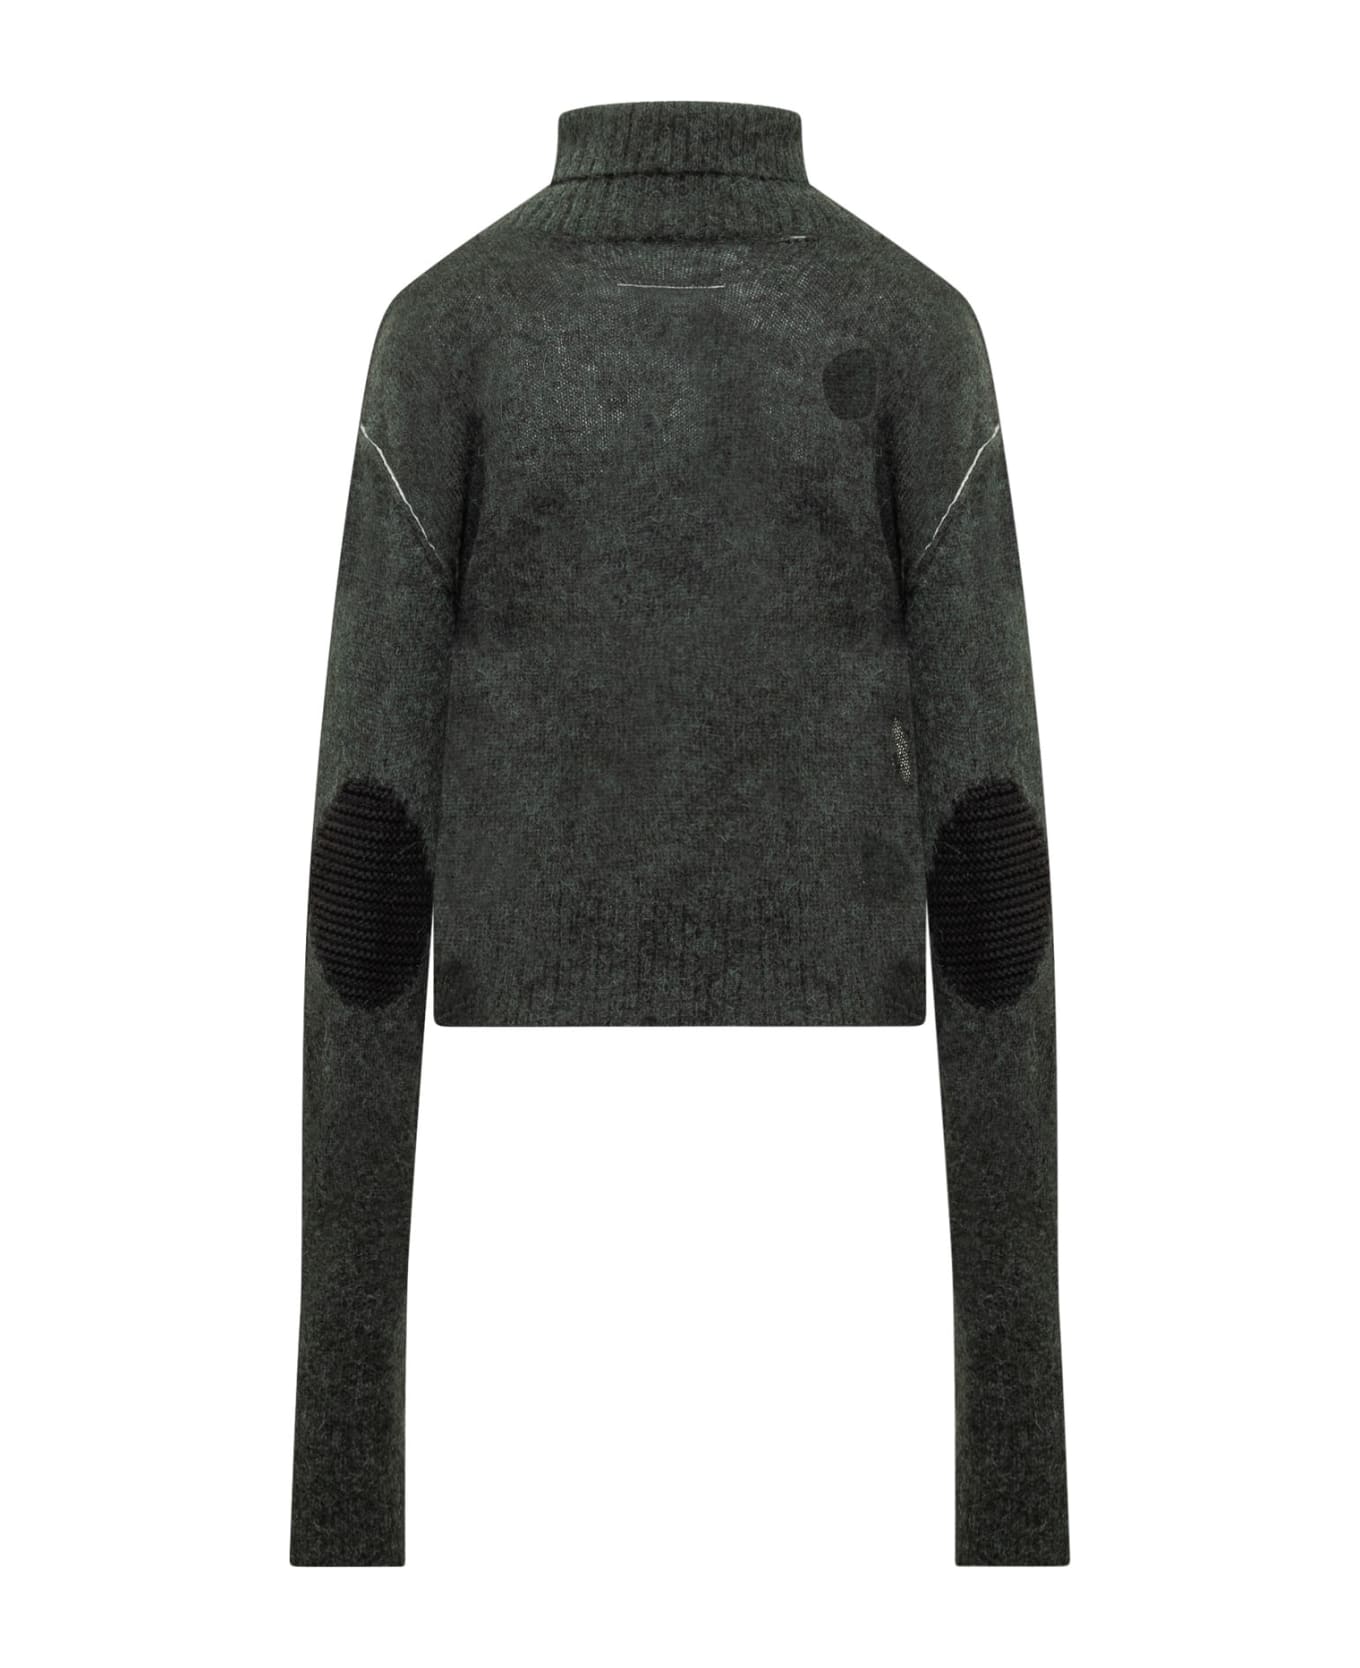 MM6 Maison Margiela Turtleneck Sweater - Green ニットウェア